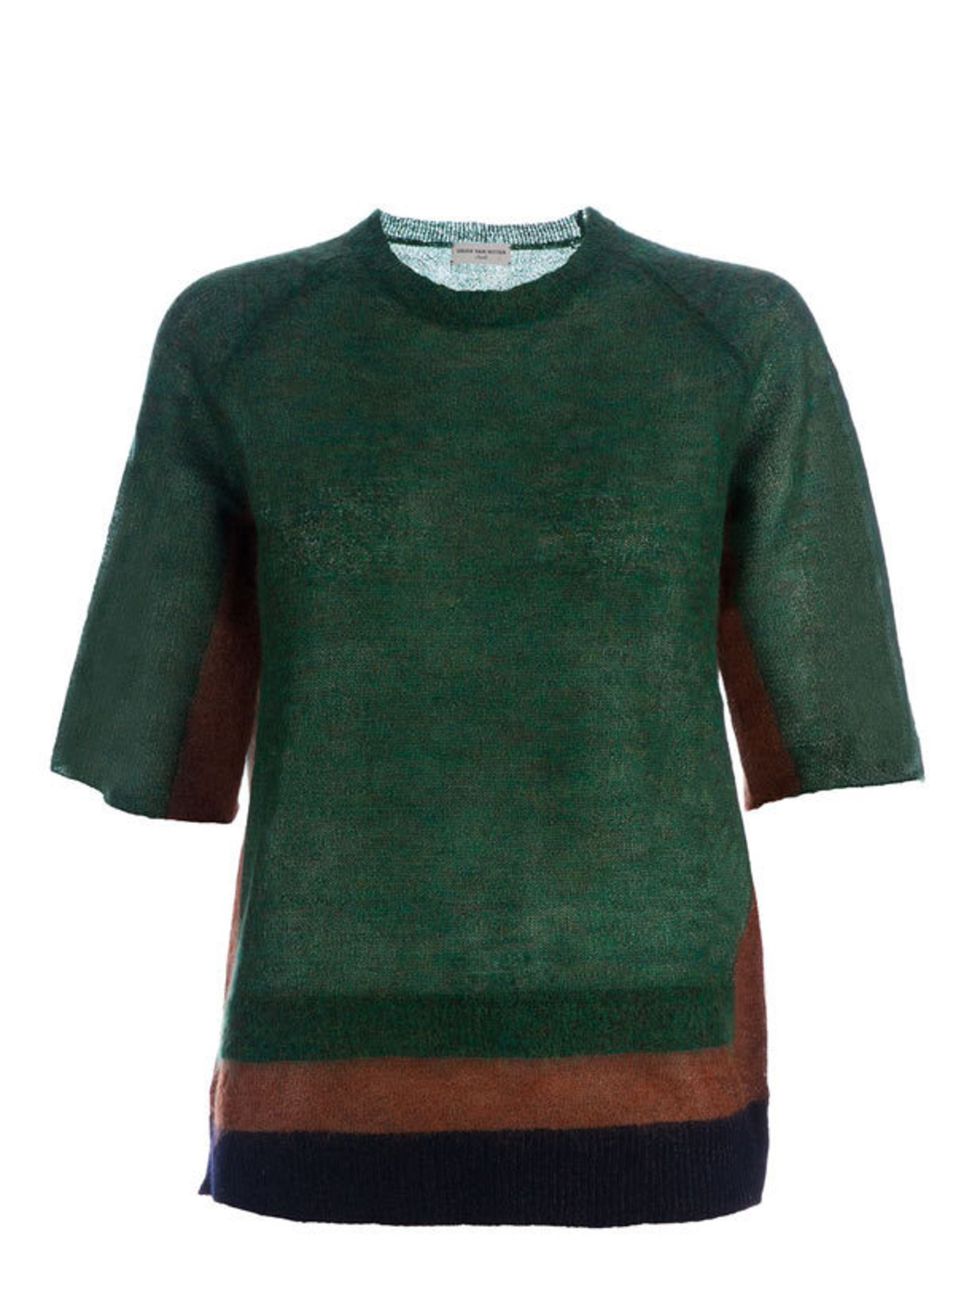 <p>Dries Van Noten striped sweater, £199, at <a href="http://www.farfetch.com/shopping/women/dries-van-noten/tops/items.aspx">Farfetch</a></p>